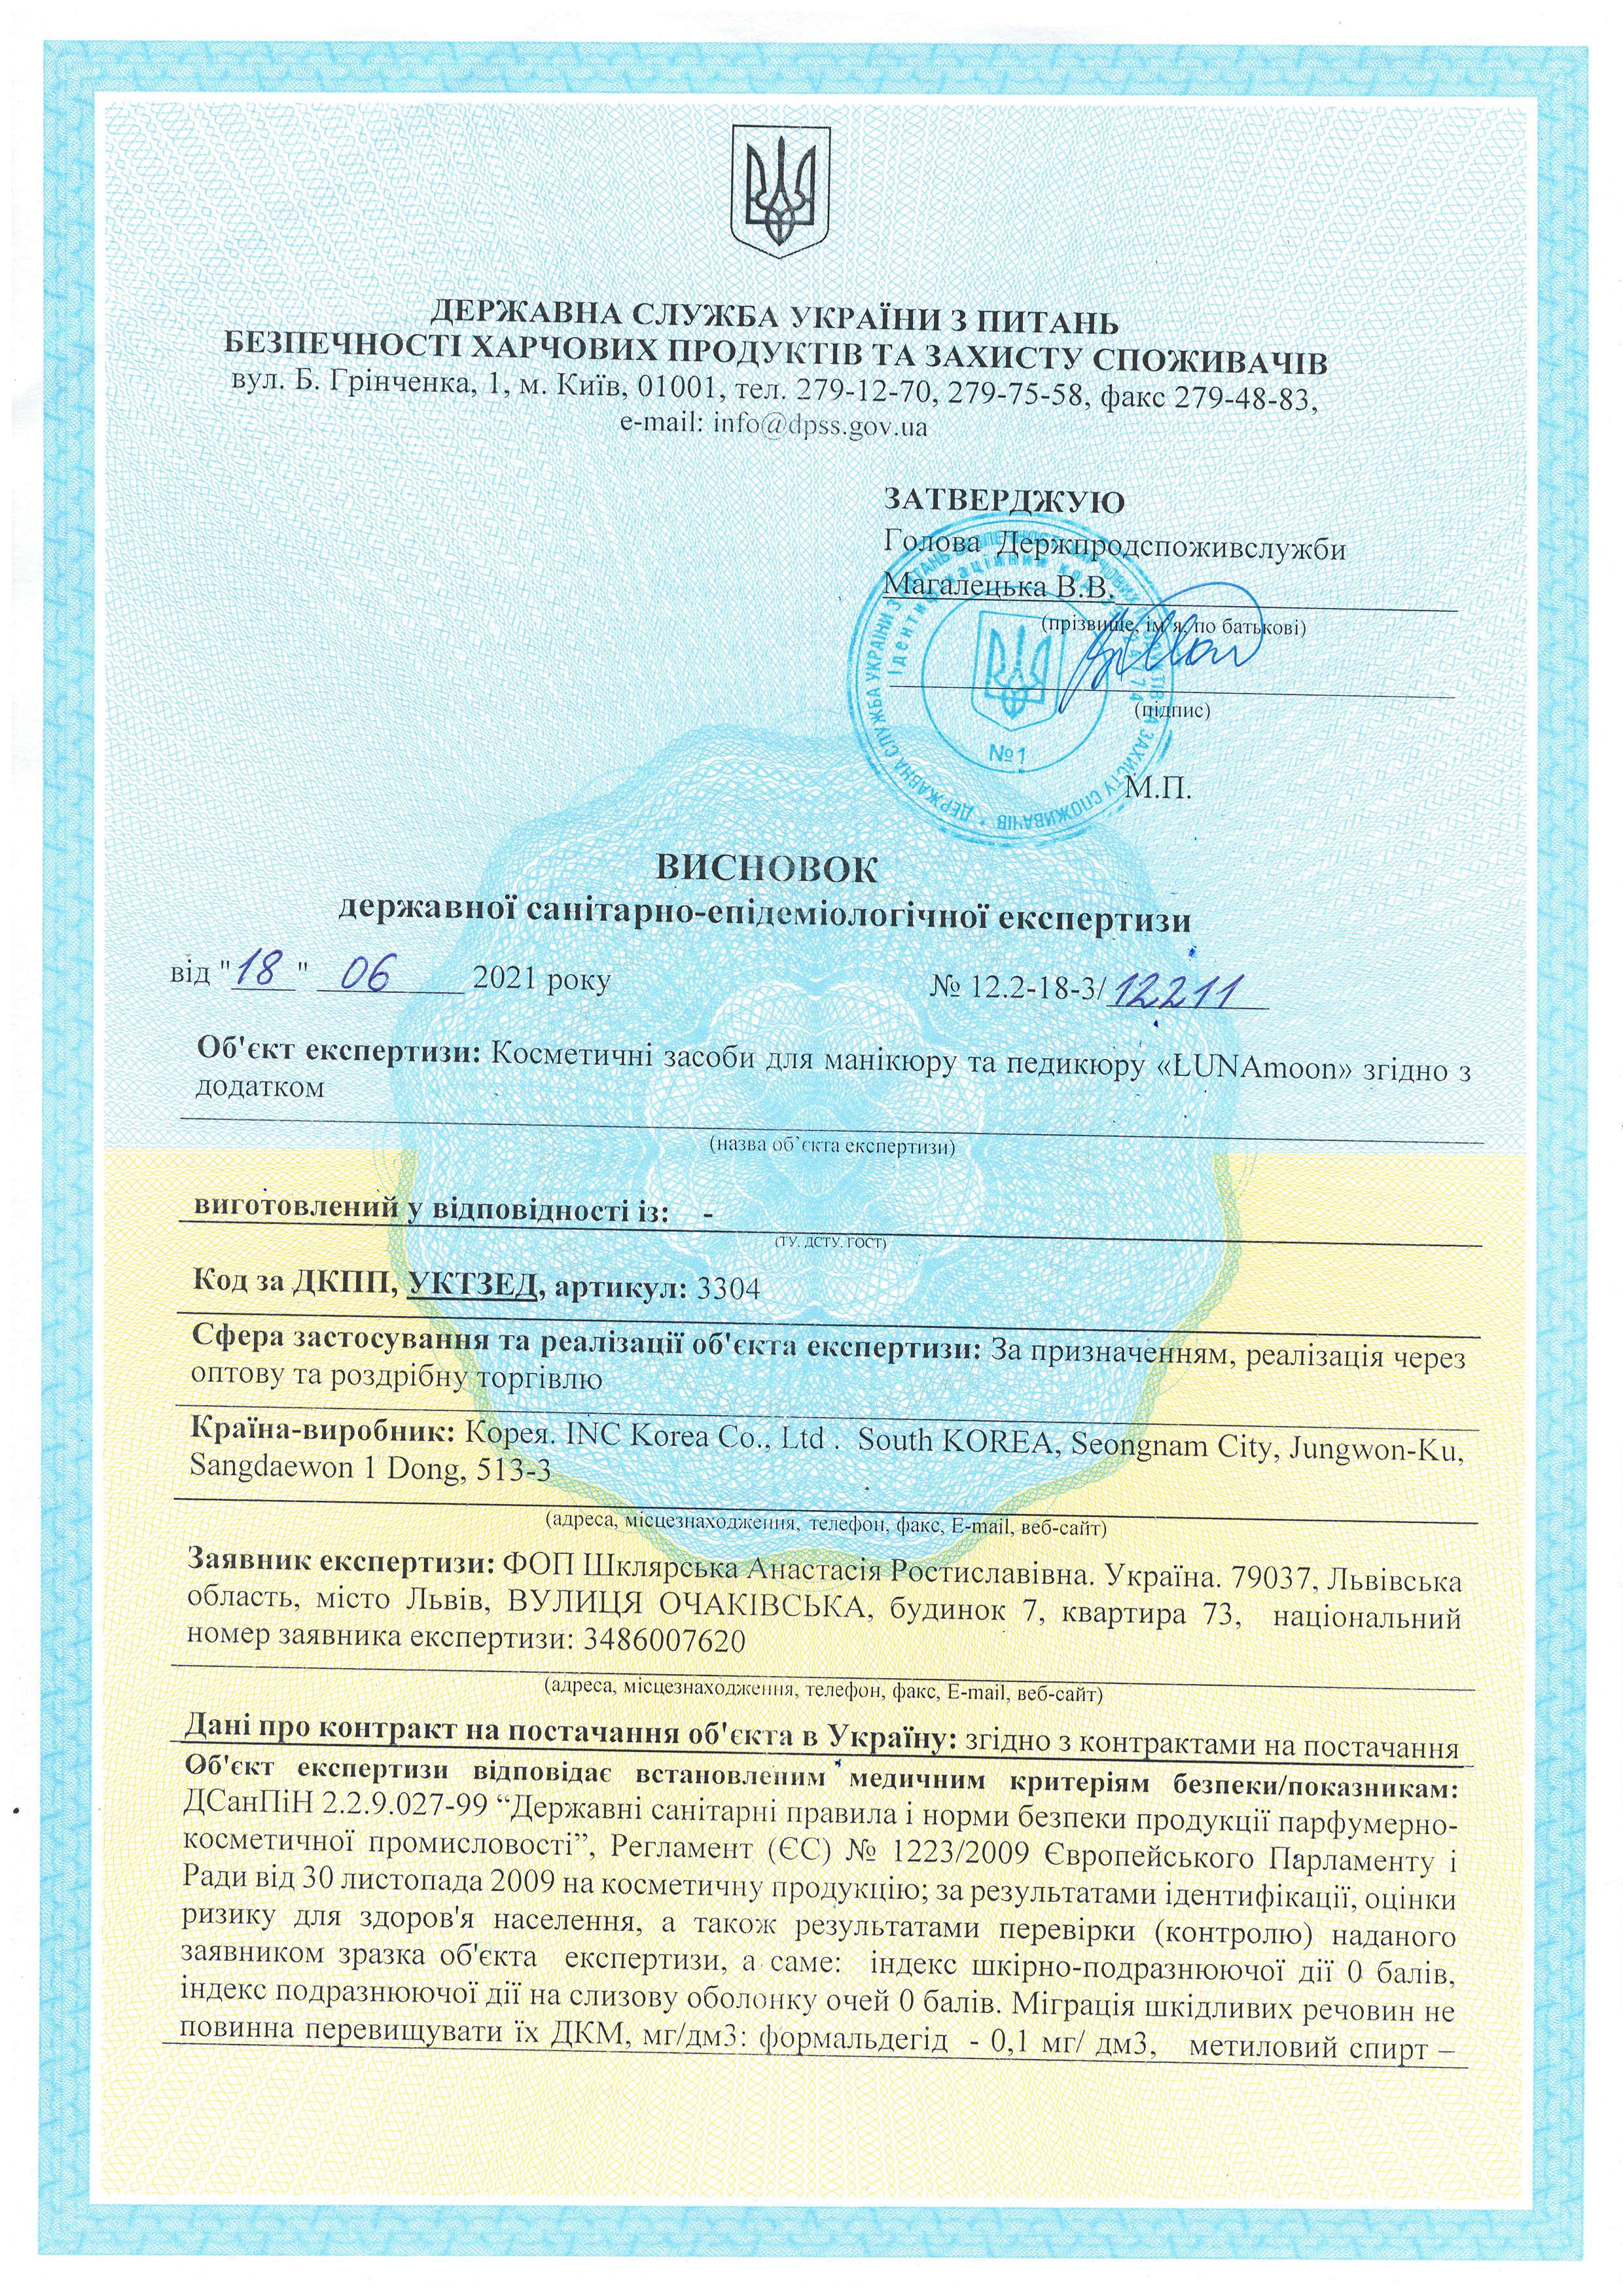 Сертификат качества на гель-лаки LUNAMoon, страница 1